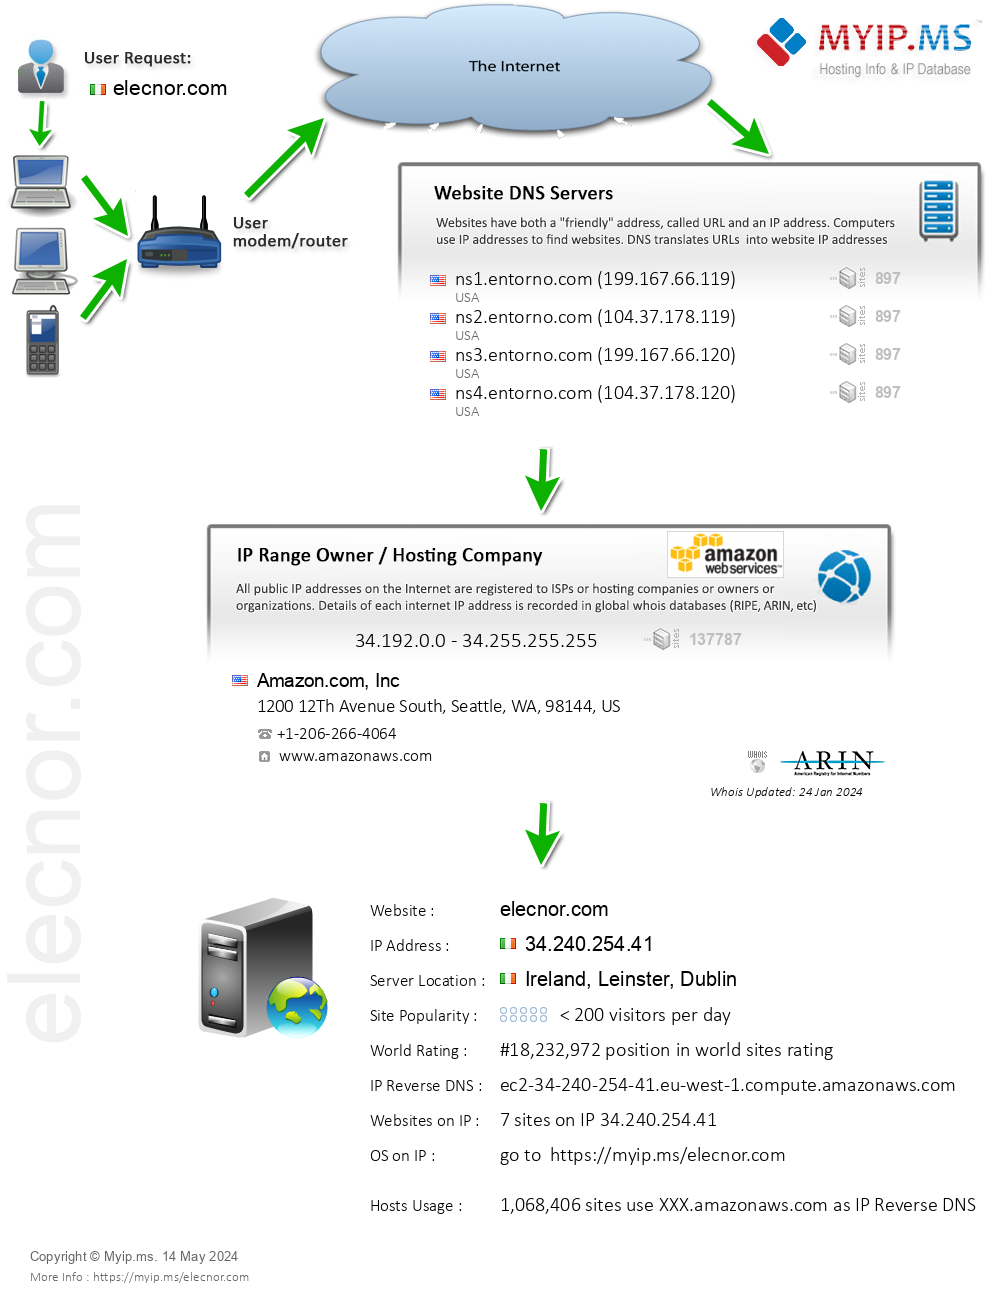 Elecnor.com - Website Hosting Visual IP Diagram